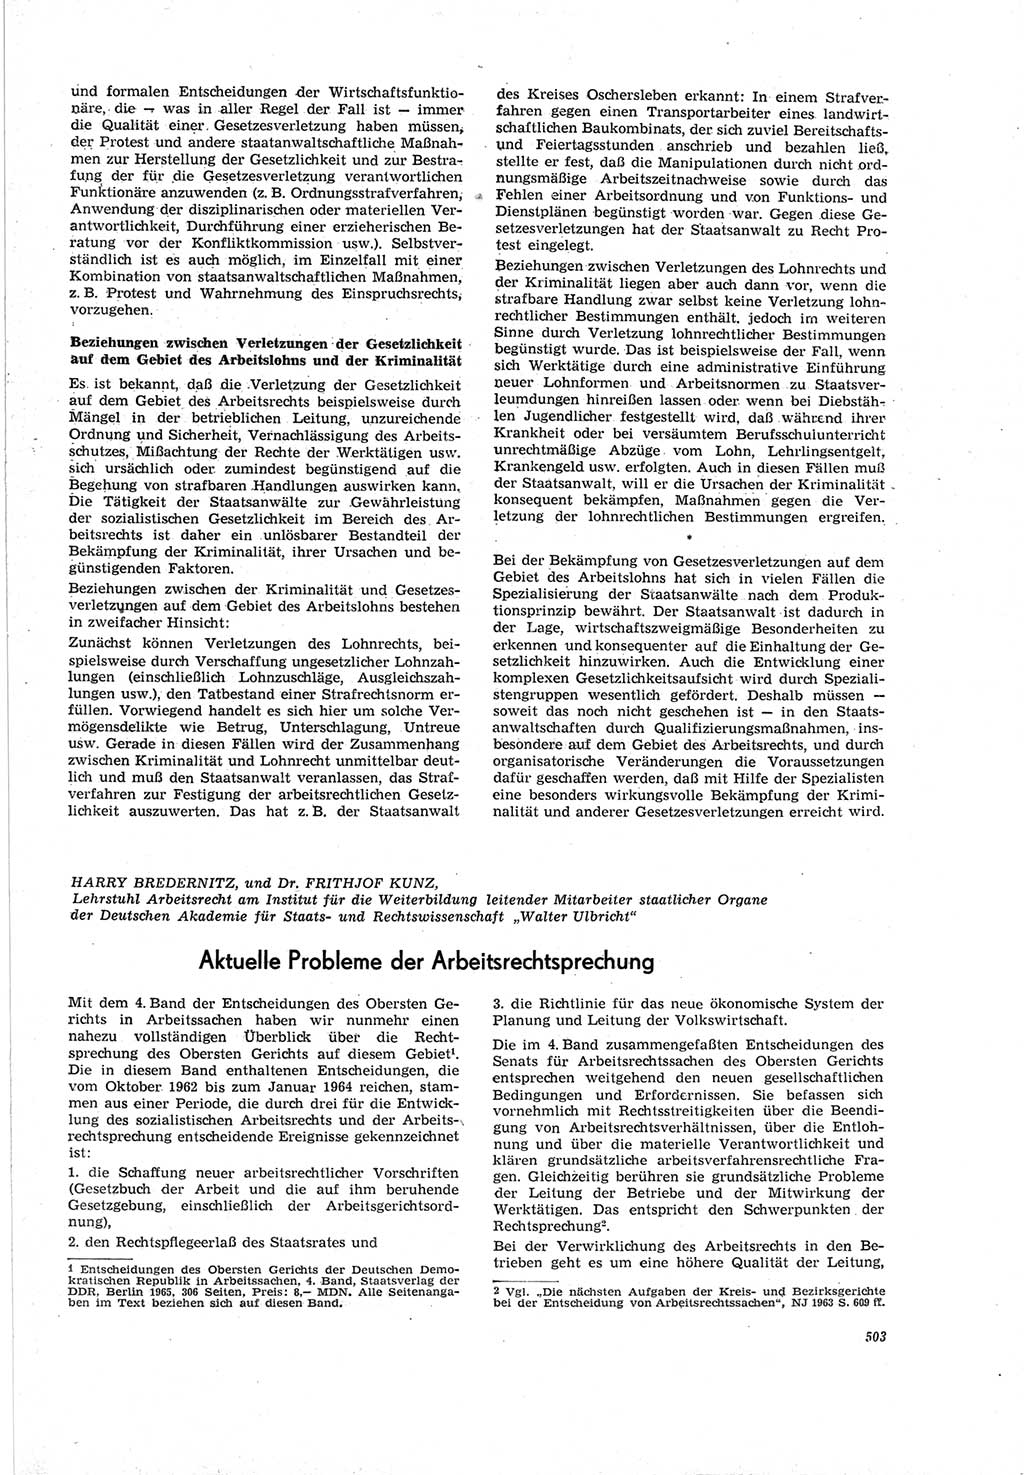 Neue Justiz (NJ), Zeitschrift für Recht und Rechtswissenschaft [Deutsche Demokratische Republik (DDR)], 19. Jahrgang 1965, Seite 503 (NJ DDR 1965, S. 503)